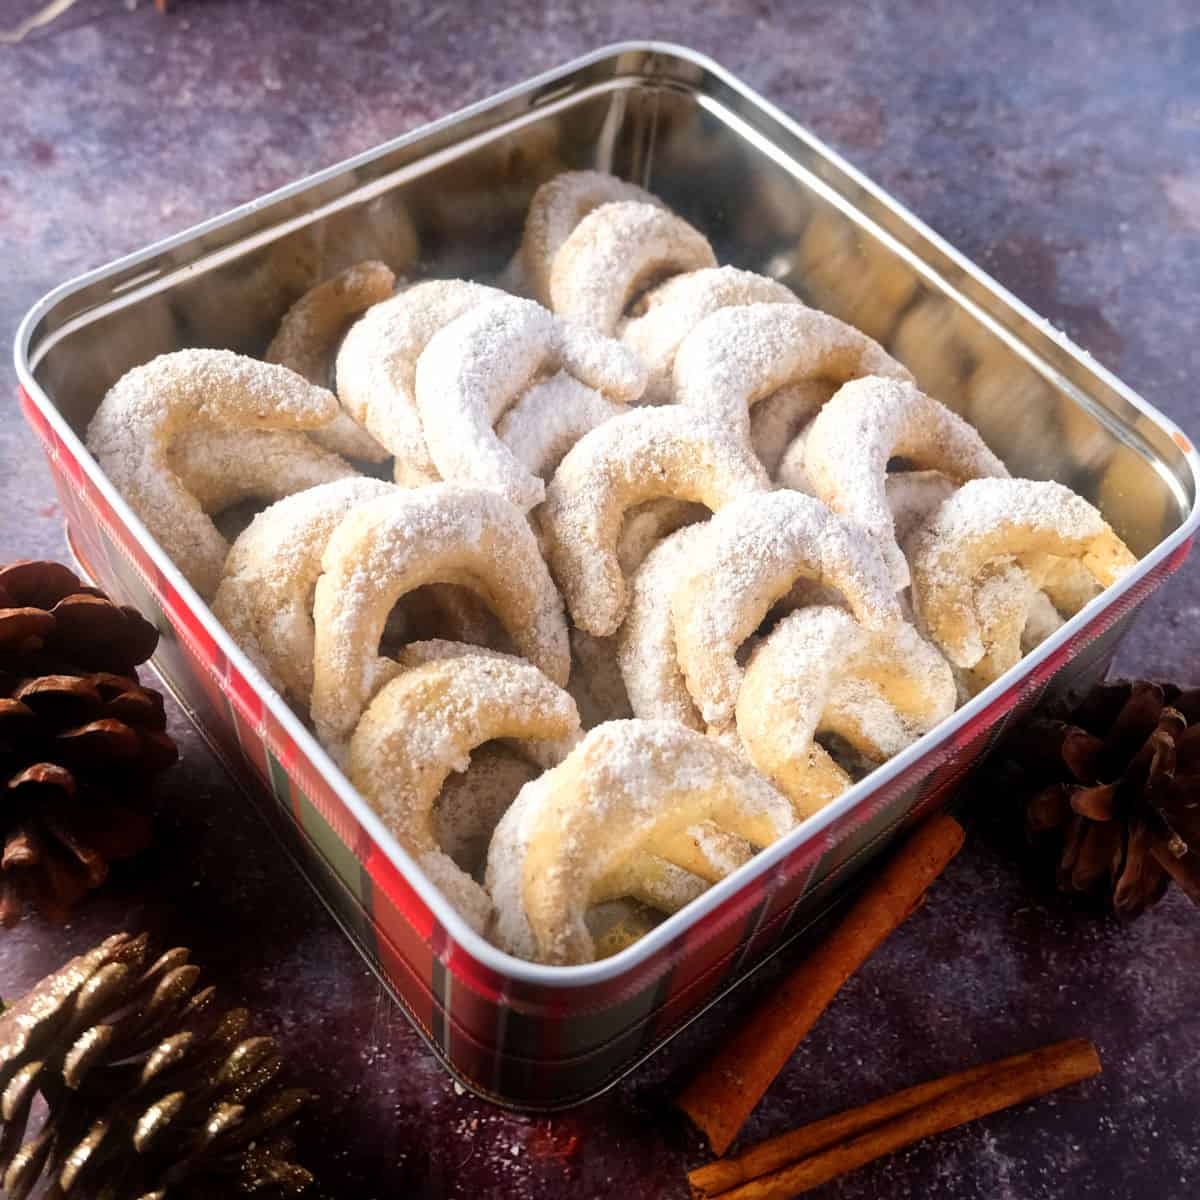 Vanillekipferl in a cookie tin